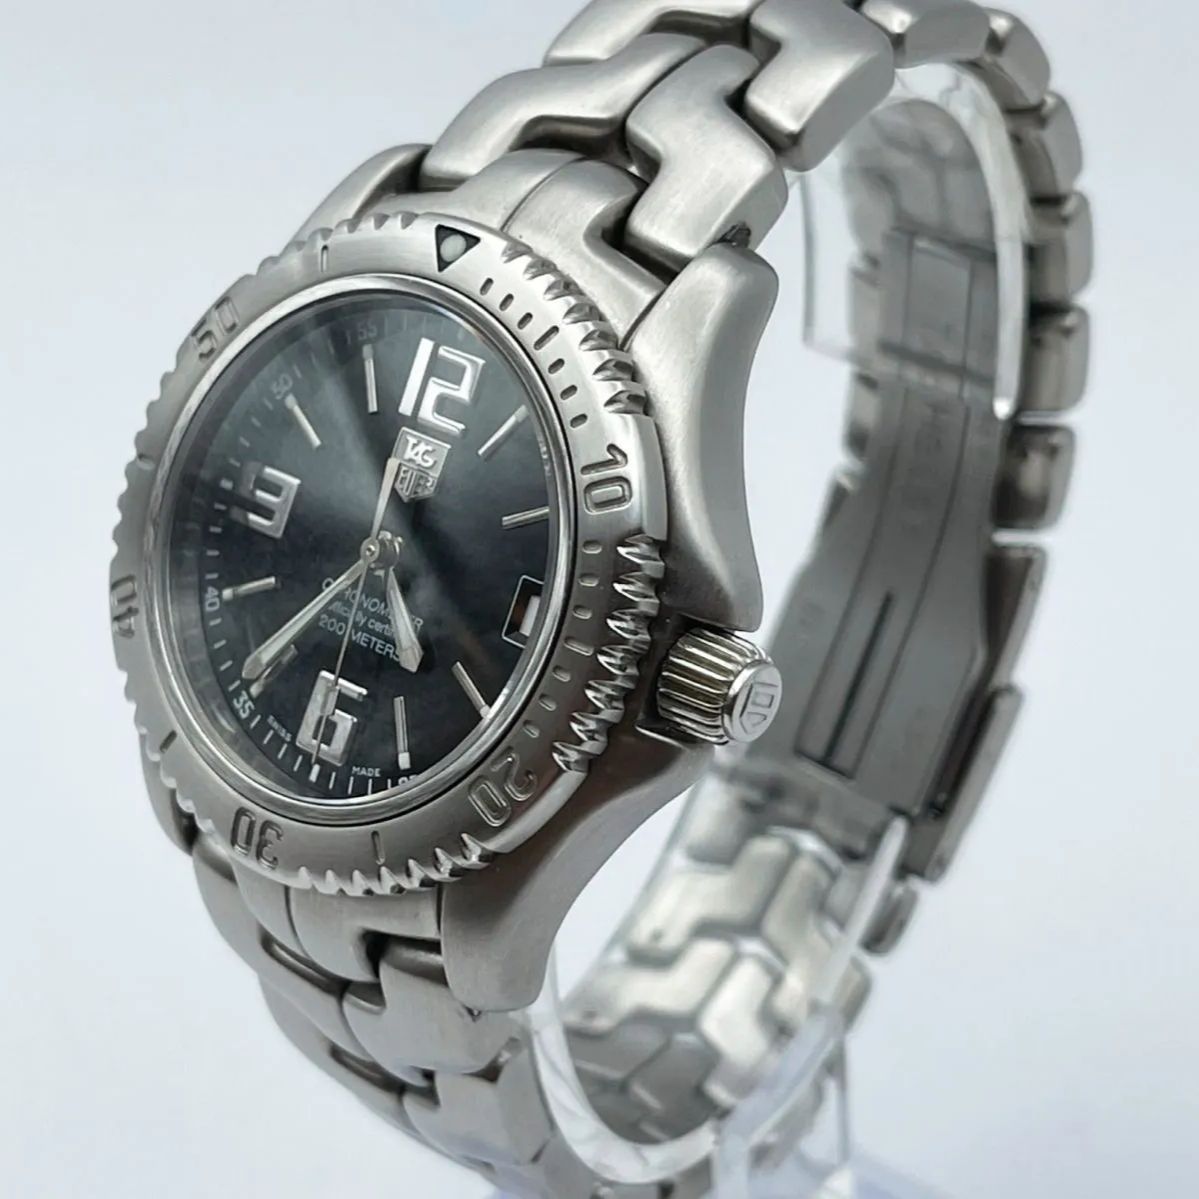 動作確認済みですTAG Heuer 自動巻き腕時計 WT5210 - 腕時計(アナログ)